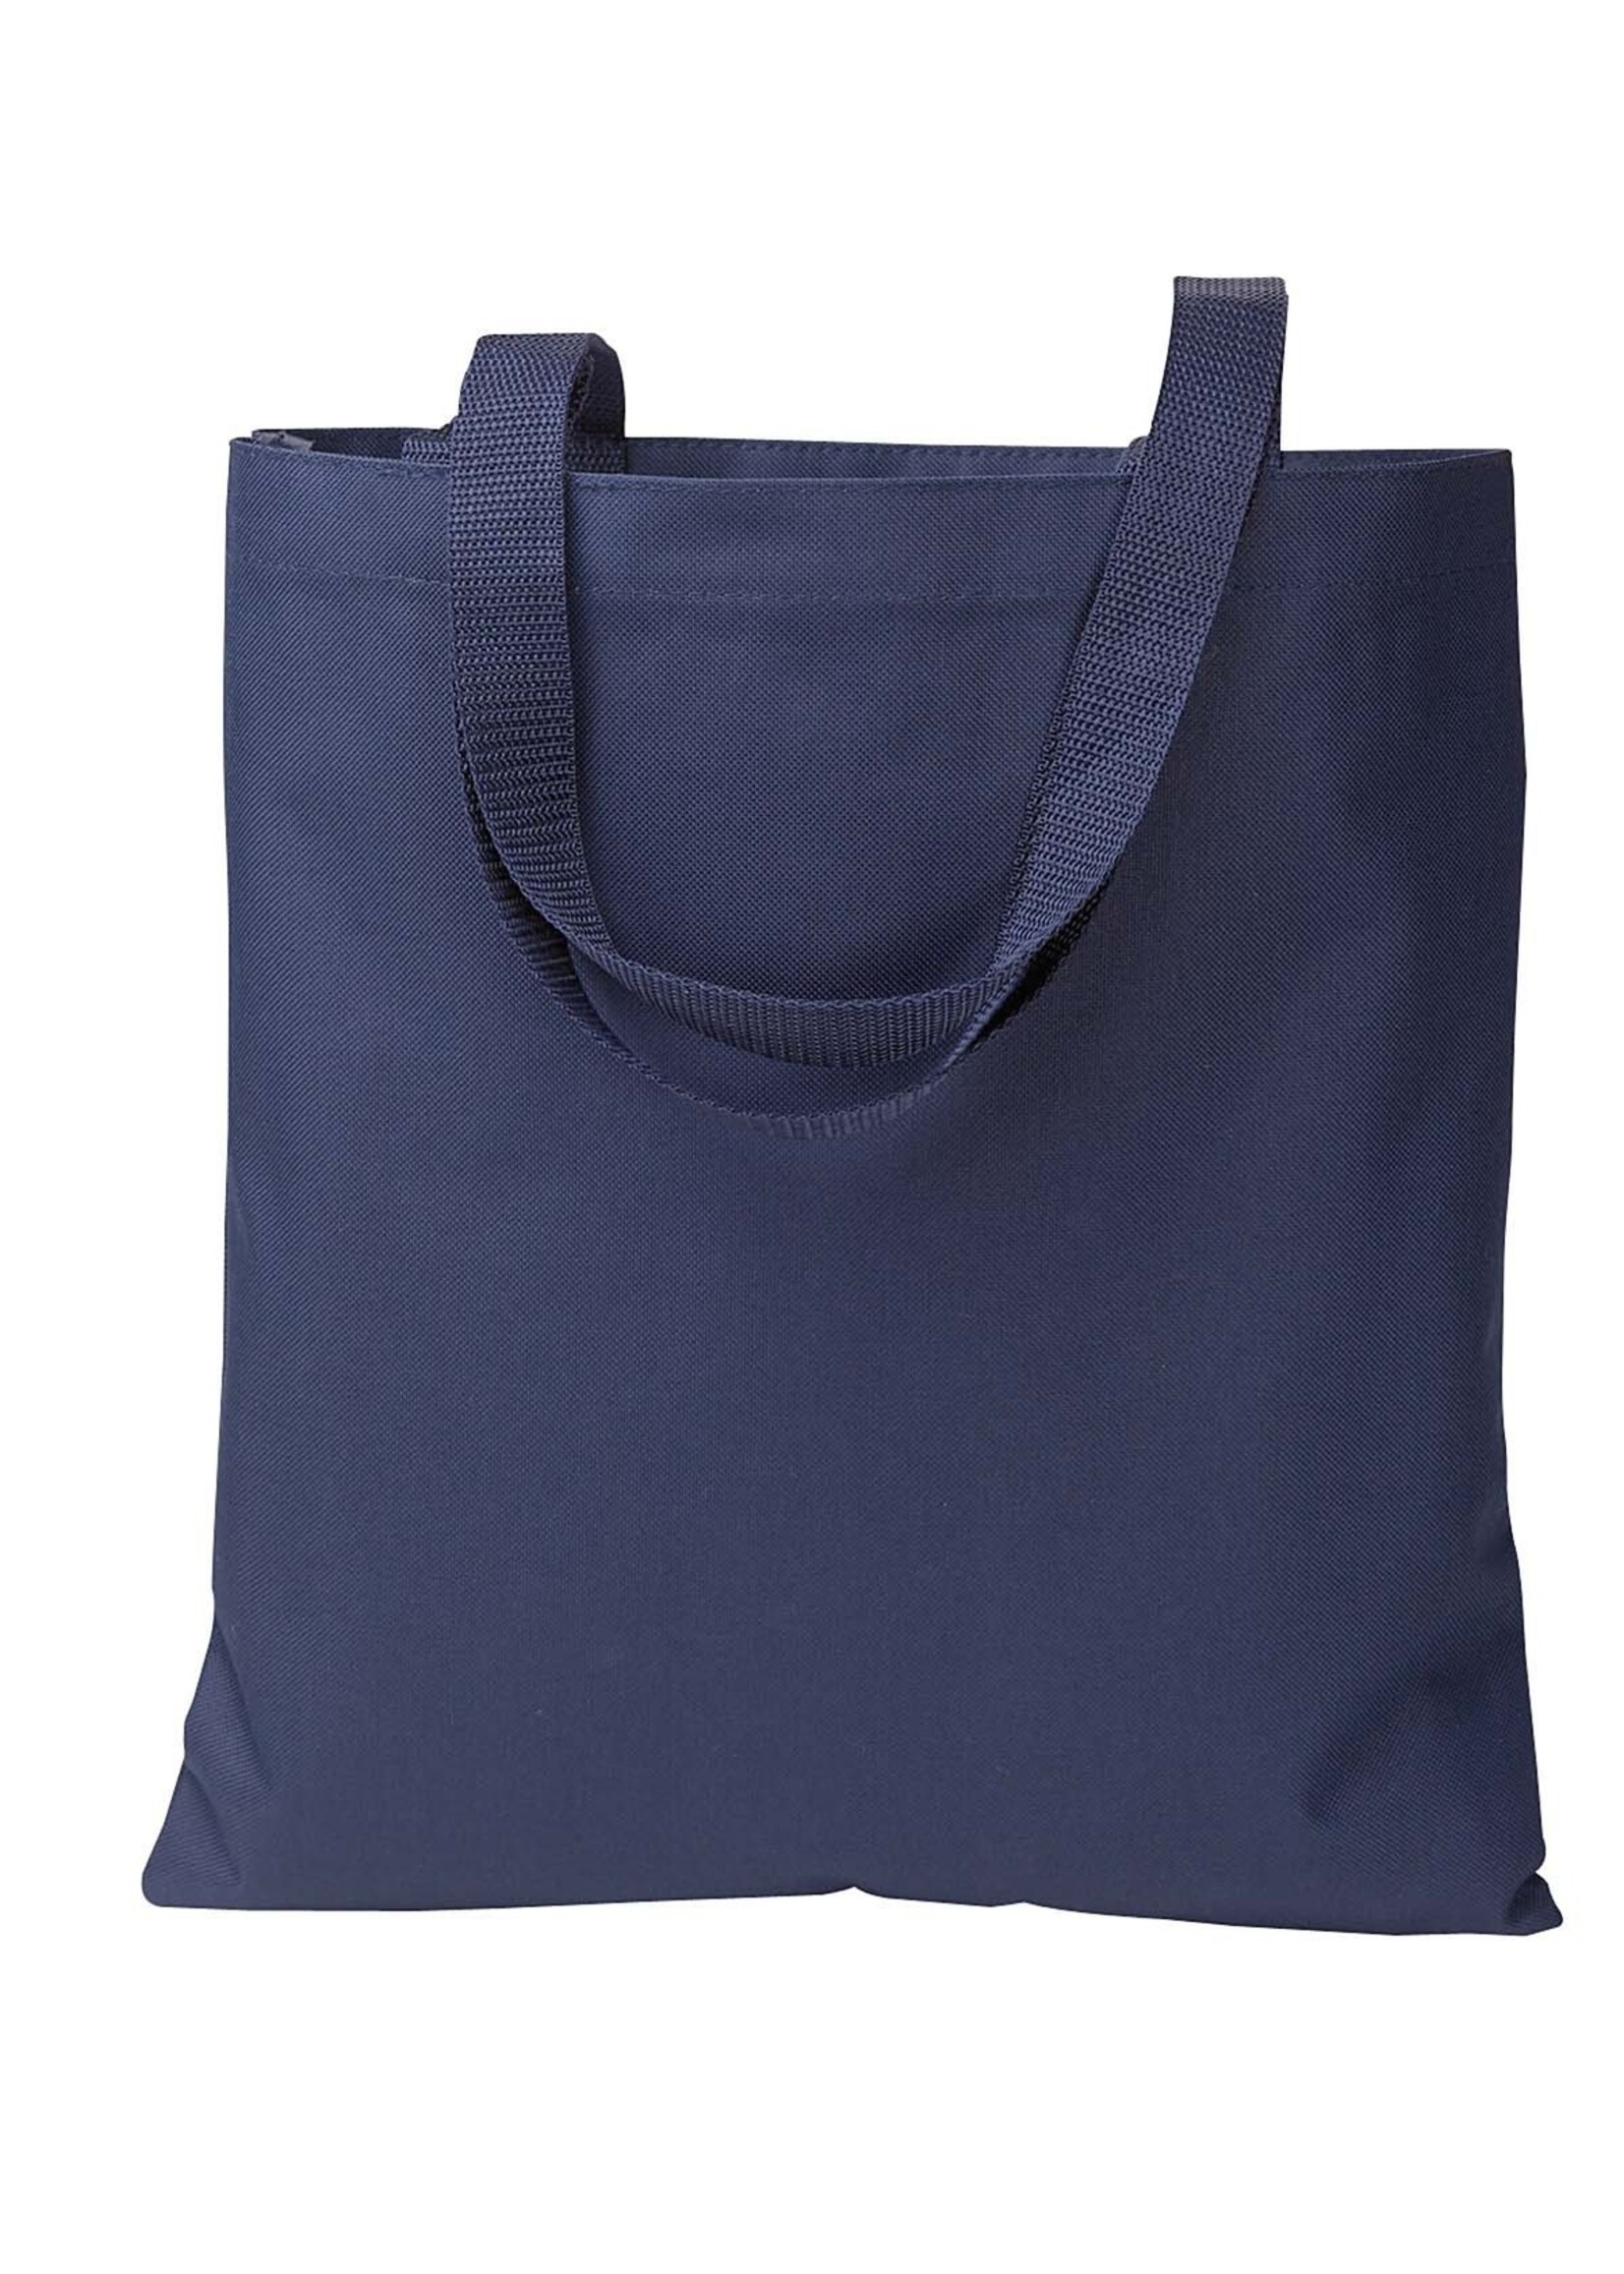 BLA Replacement Tote Bag